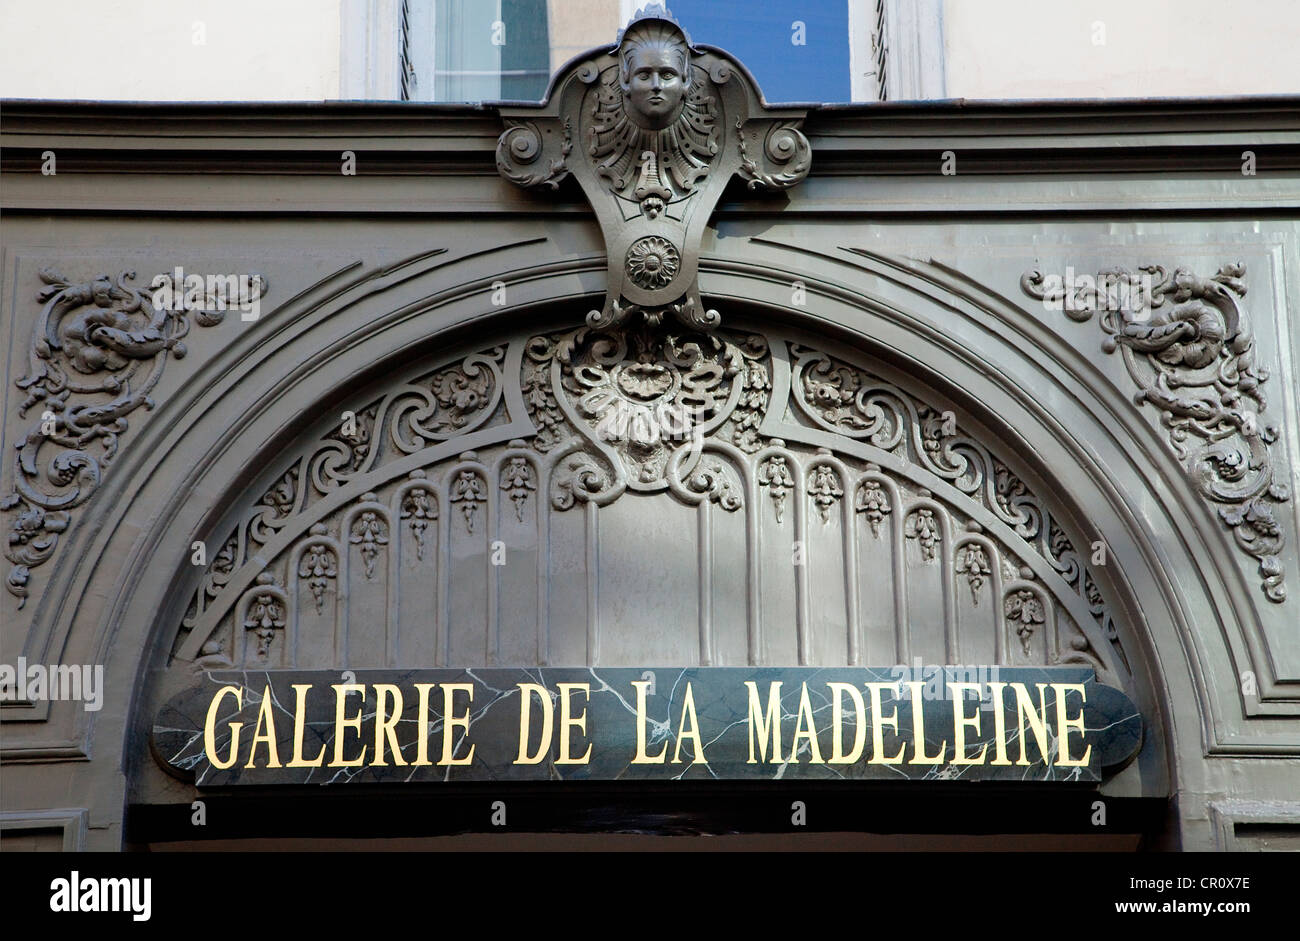 France, Paris, the Galerie de la Madeleine Stock Photo - Alamy